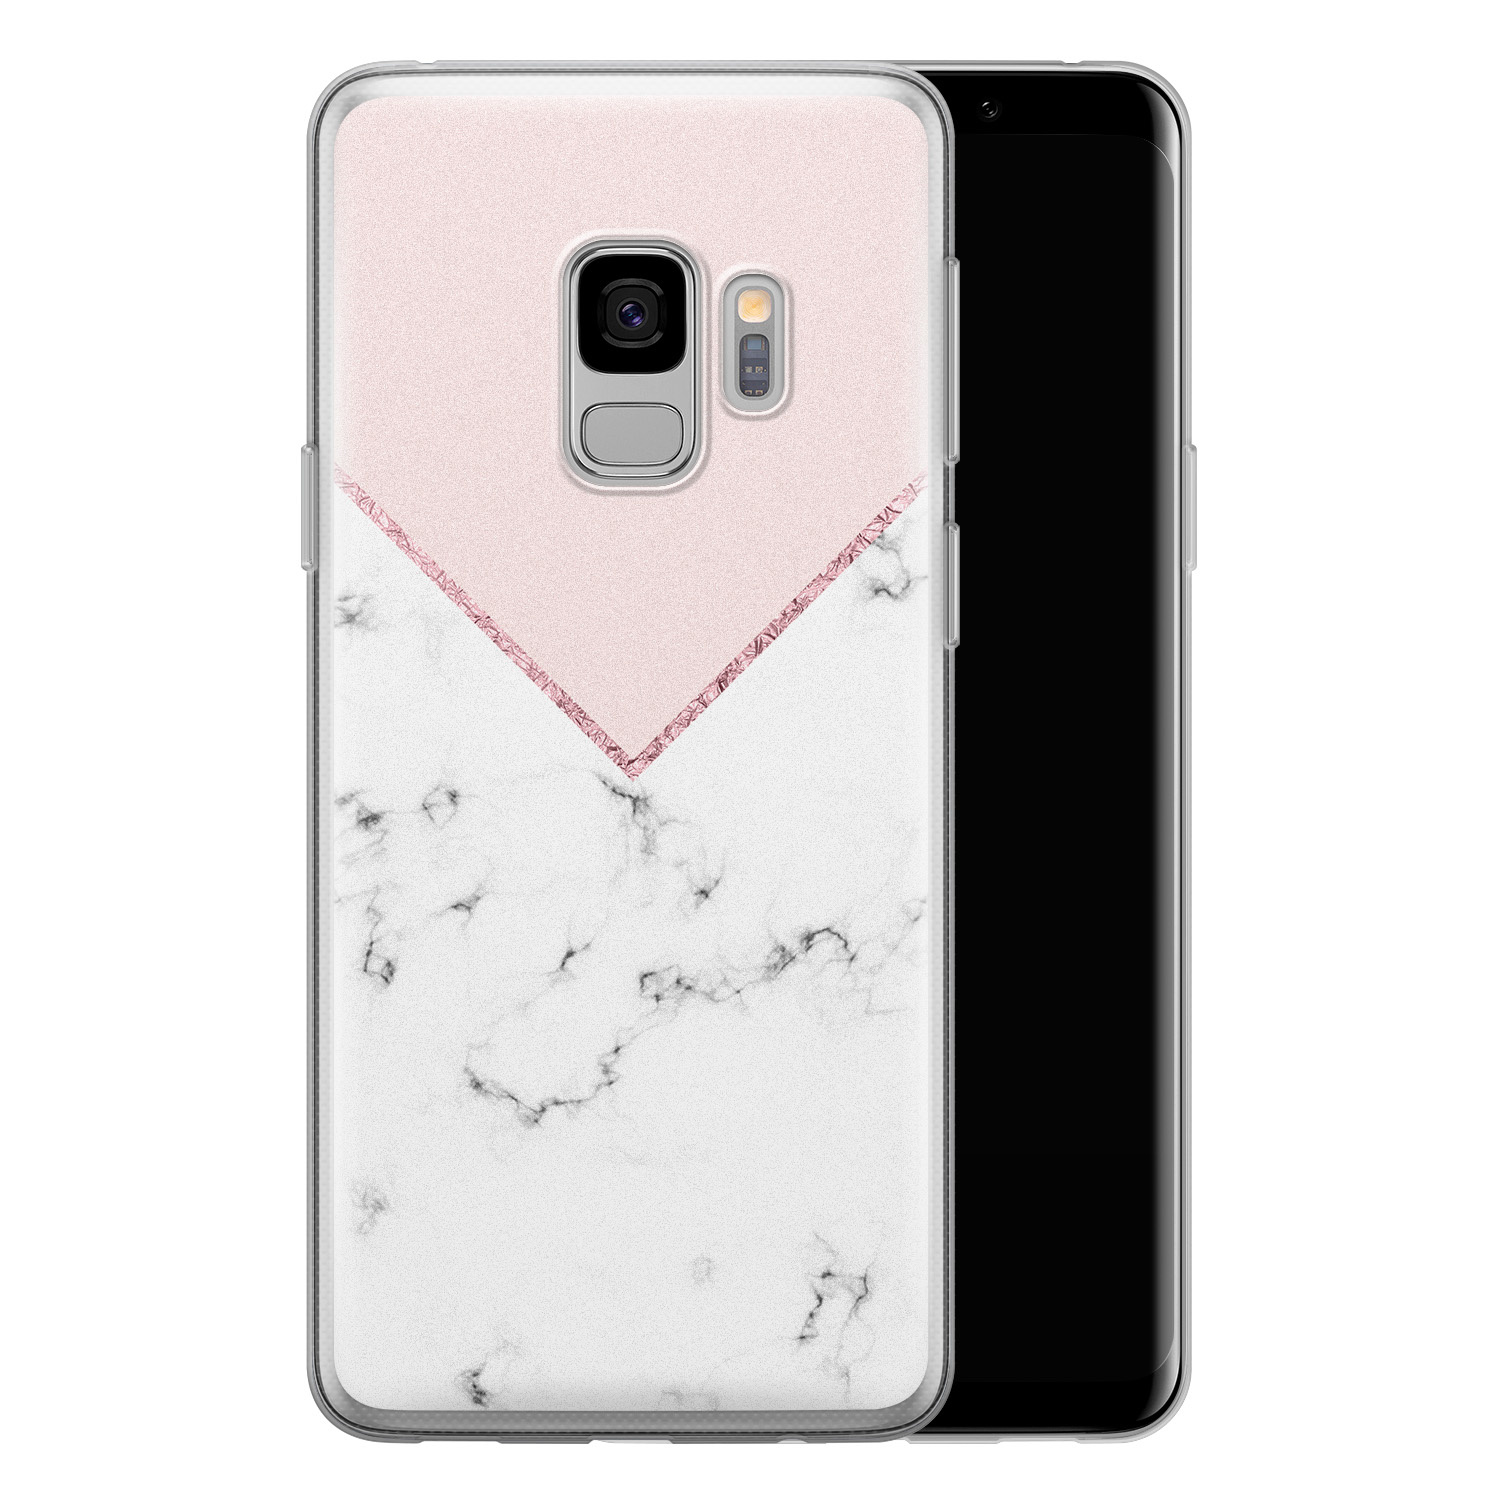 Leuke Telefoonhoesjes Samsung Galaxy S9 siliconen hoesje - Marmer roze grijs